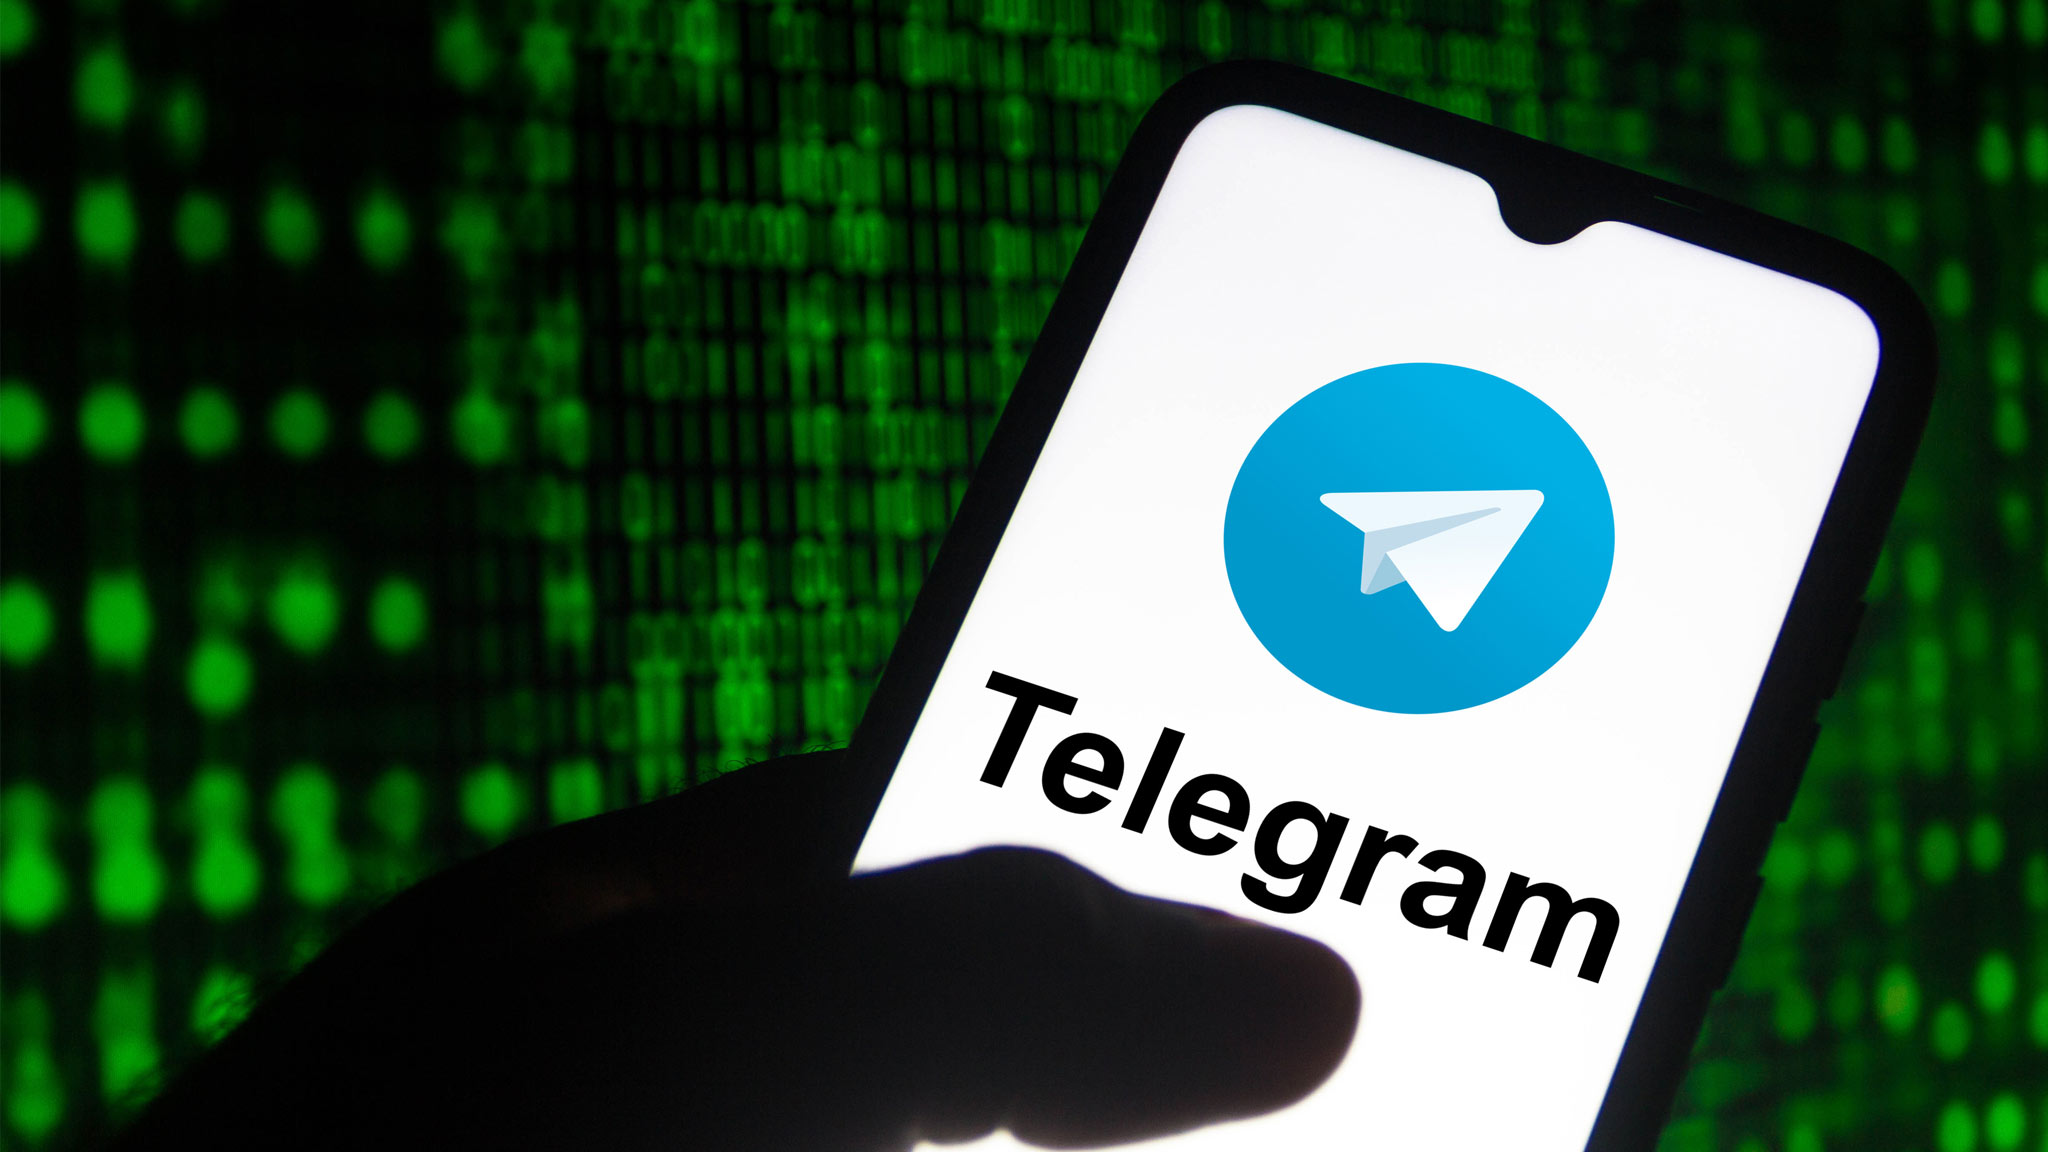 ترفندهای تلگرام که استفاده از آن را آسان تر می کند + عکس